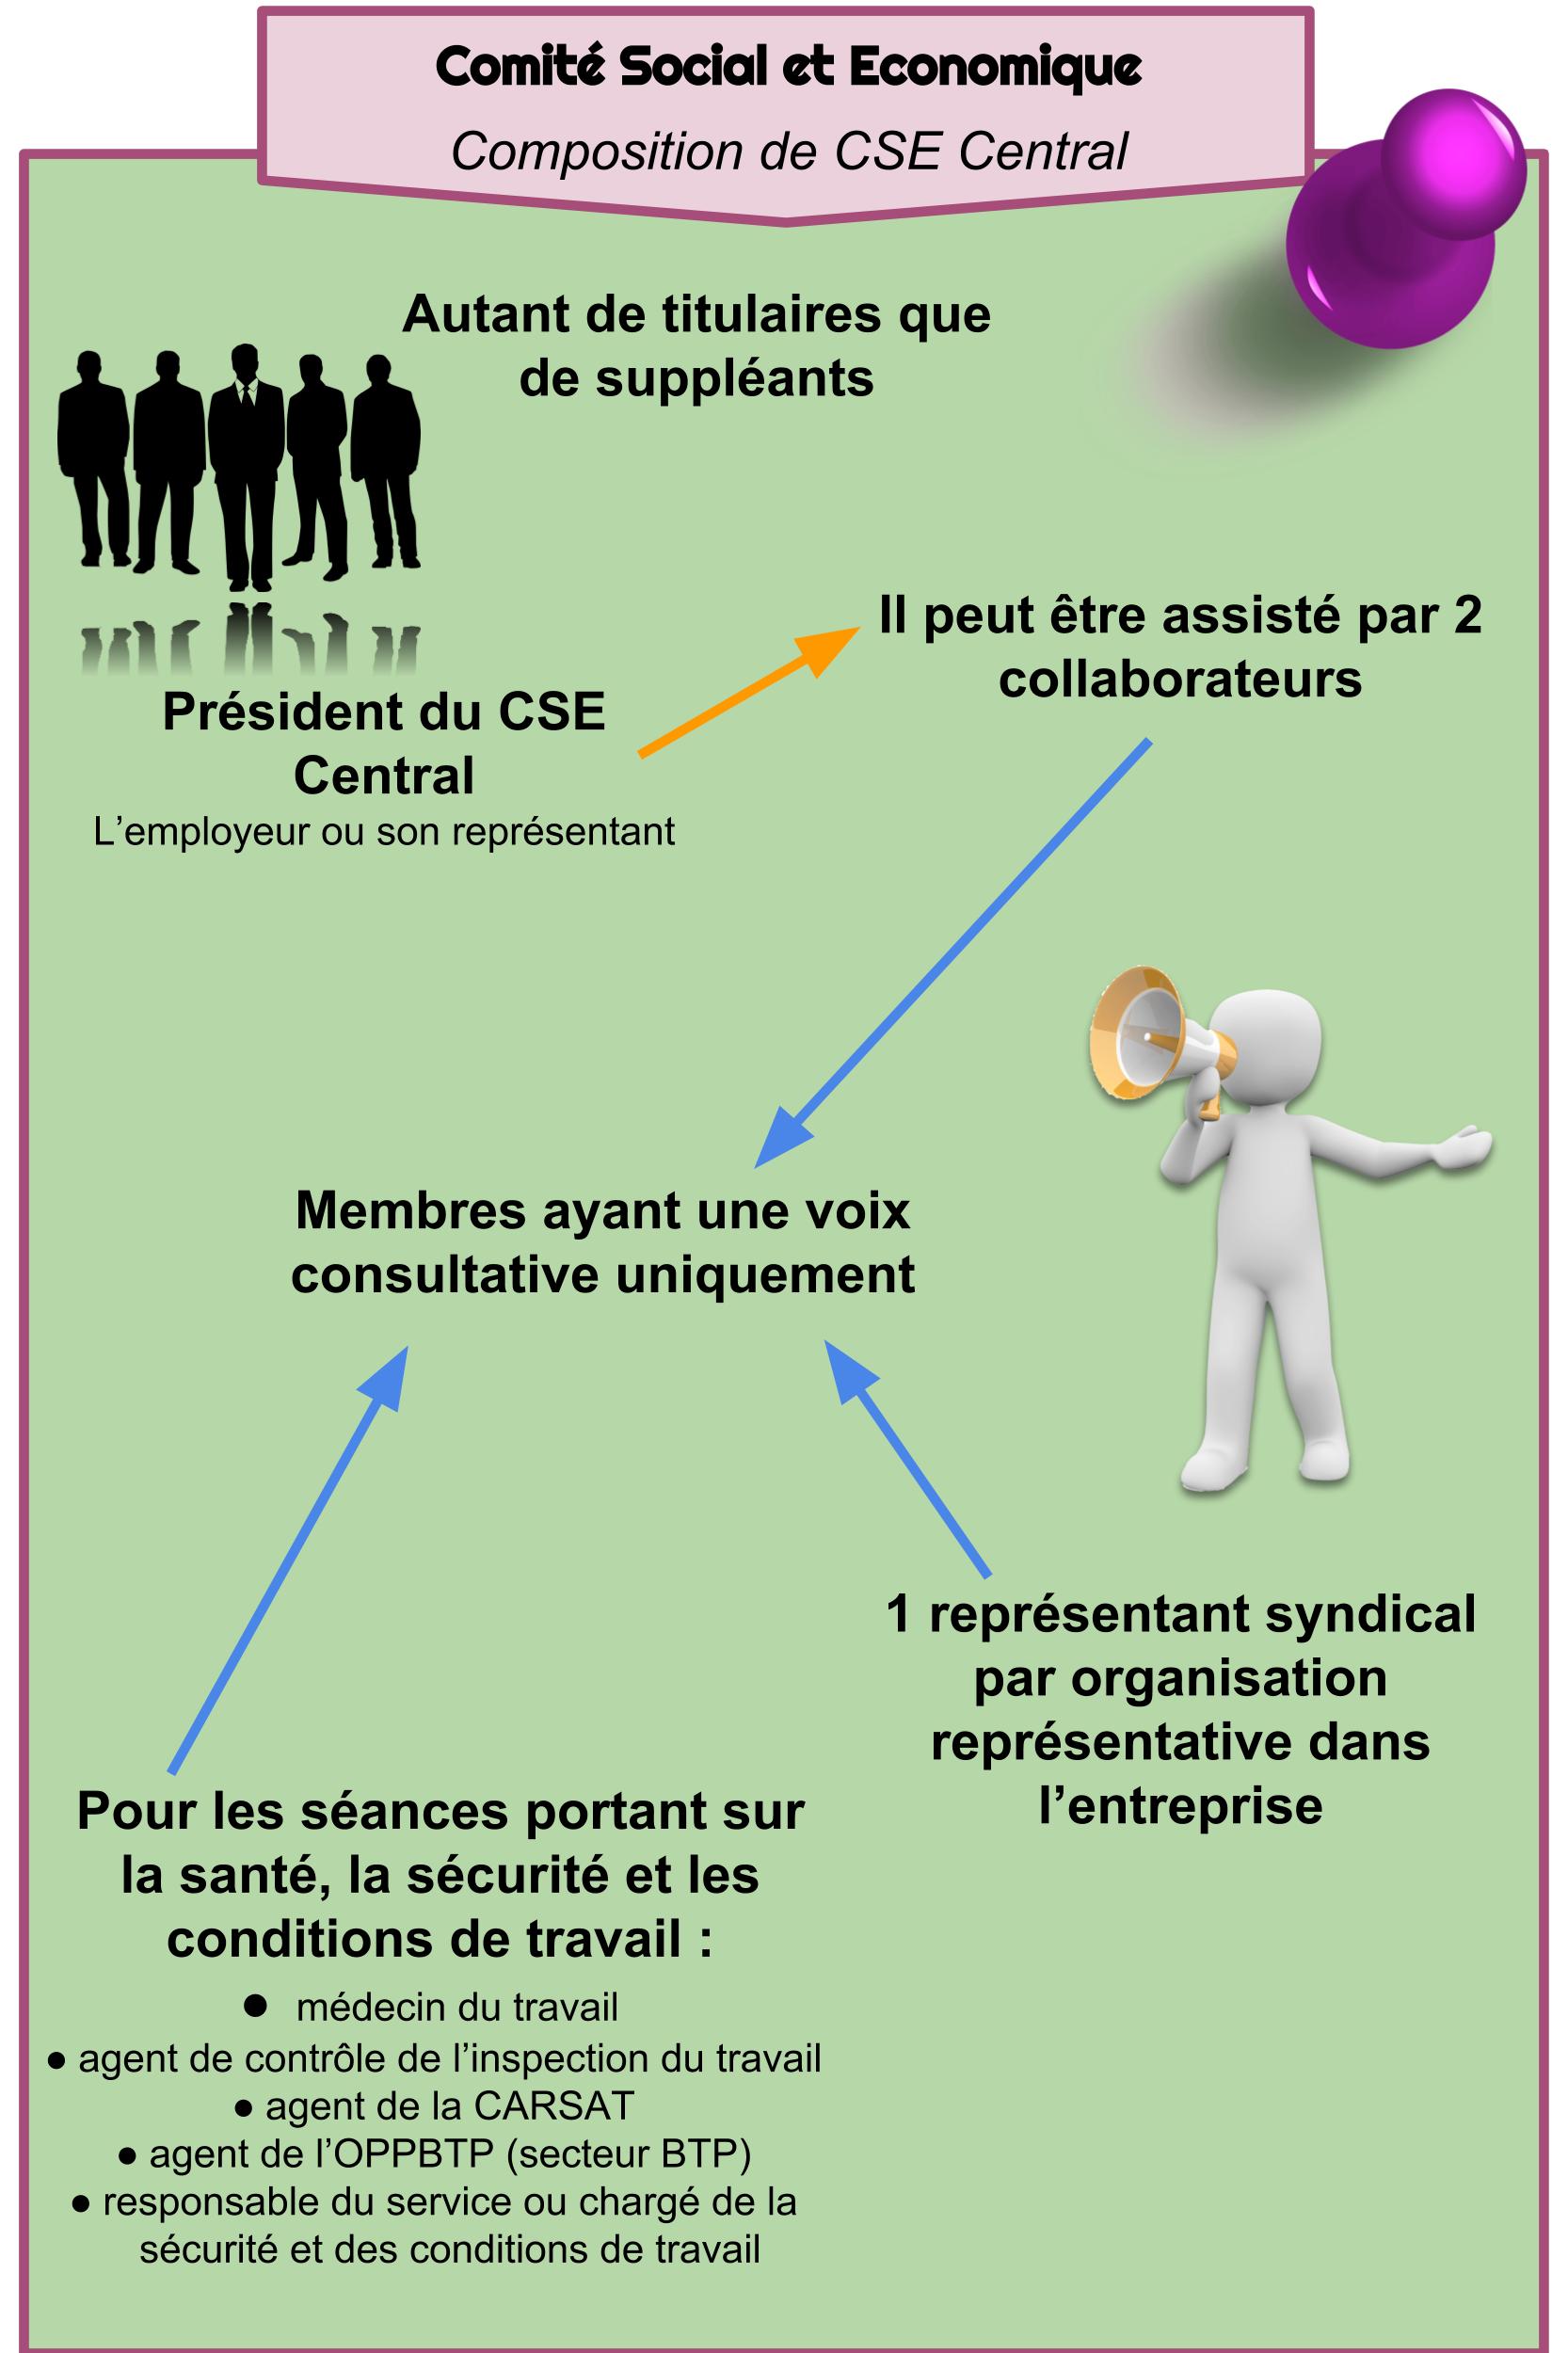 Comité Social et Economique - Composition de CSE Central